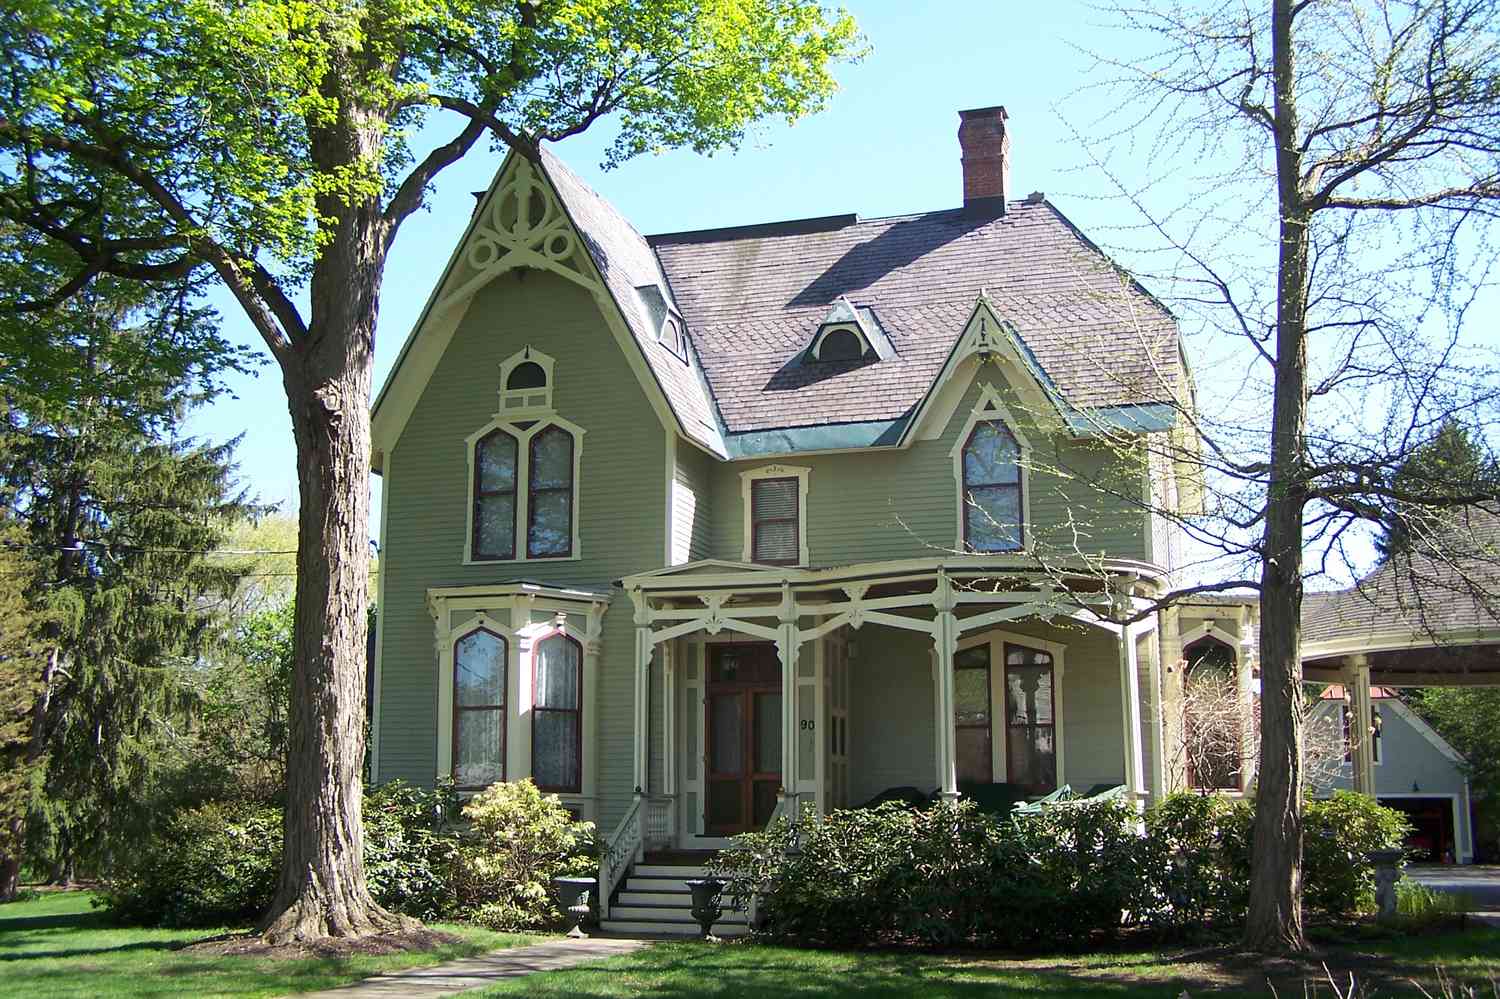 Casa vitoriana de dois andares, fachada verde com acabamento em creme e vermelho, telhado íngreme com frontões e acabamento em bargeboard